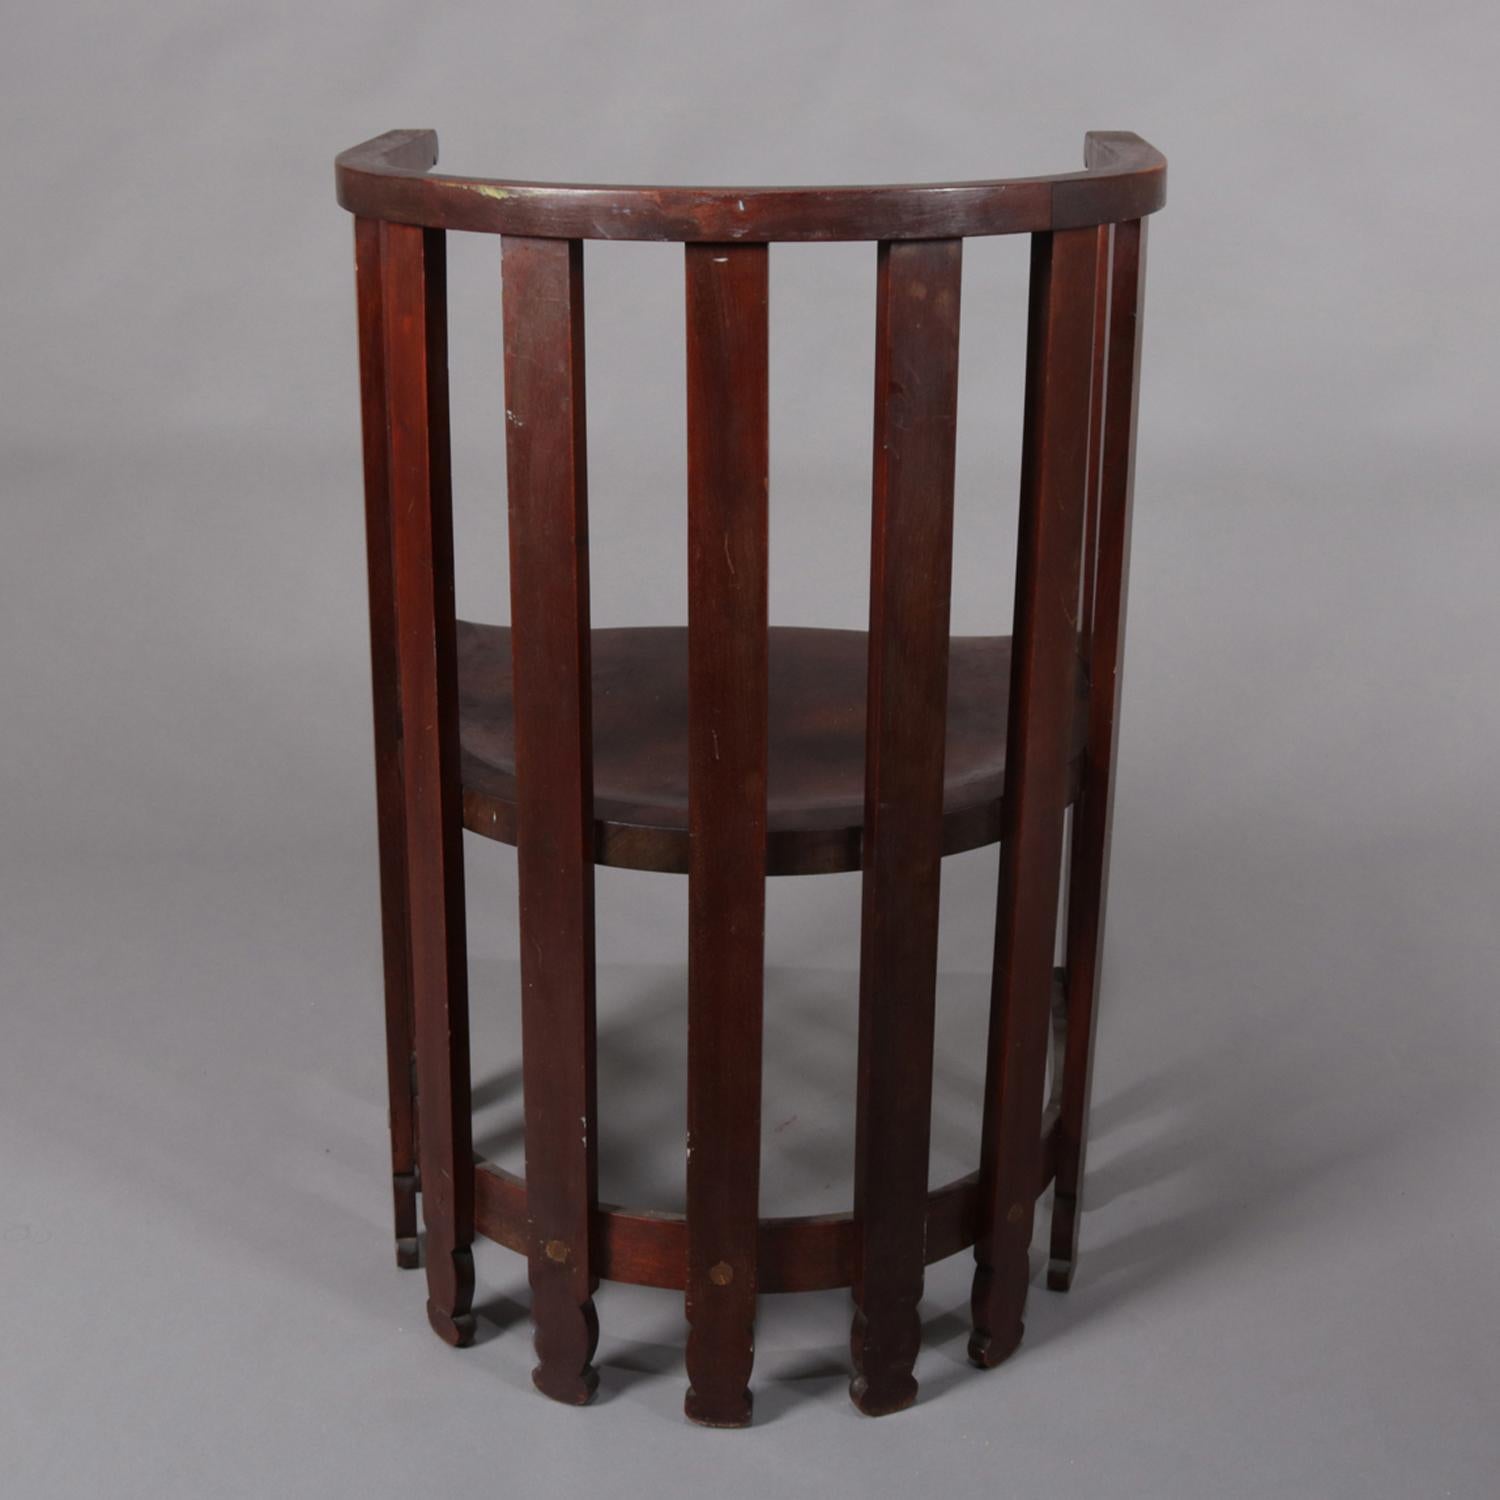 American Arts & Crafts Prairie Frank Lloyd Wright School Mahogany Spindle Chair